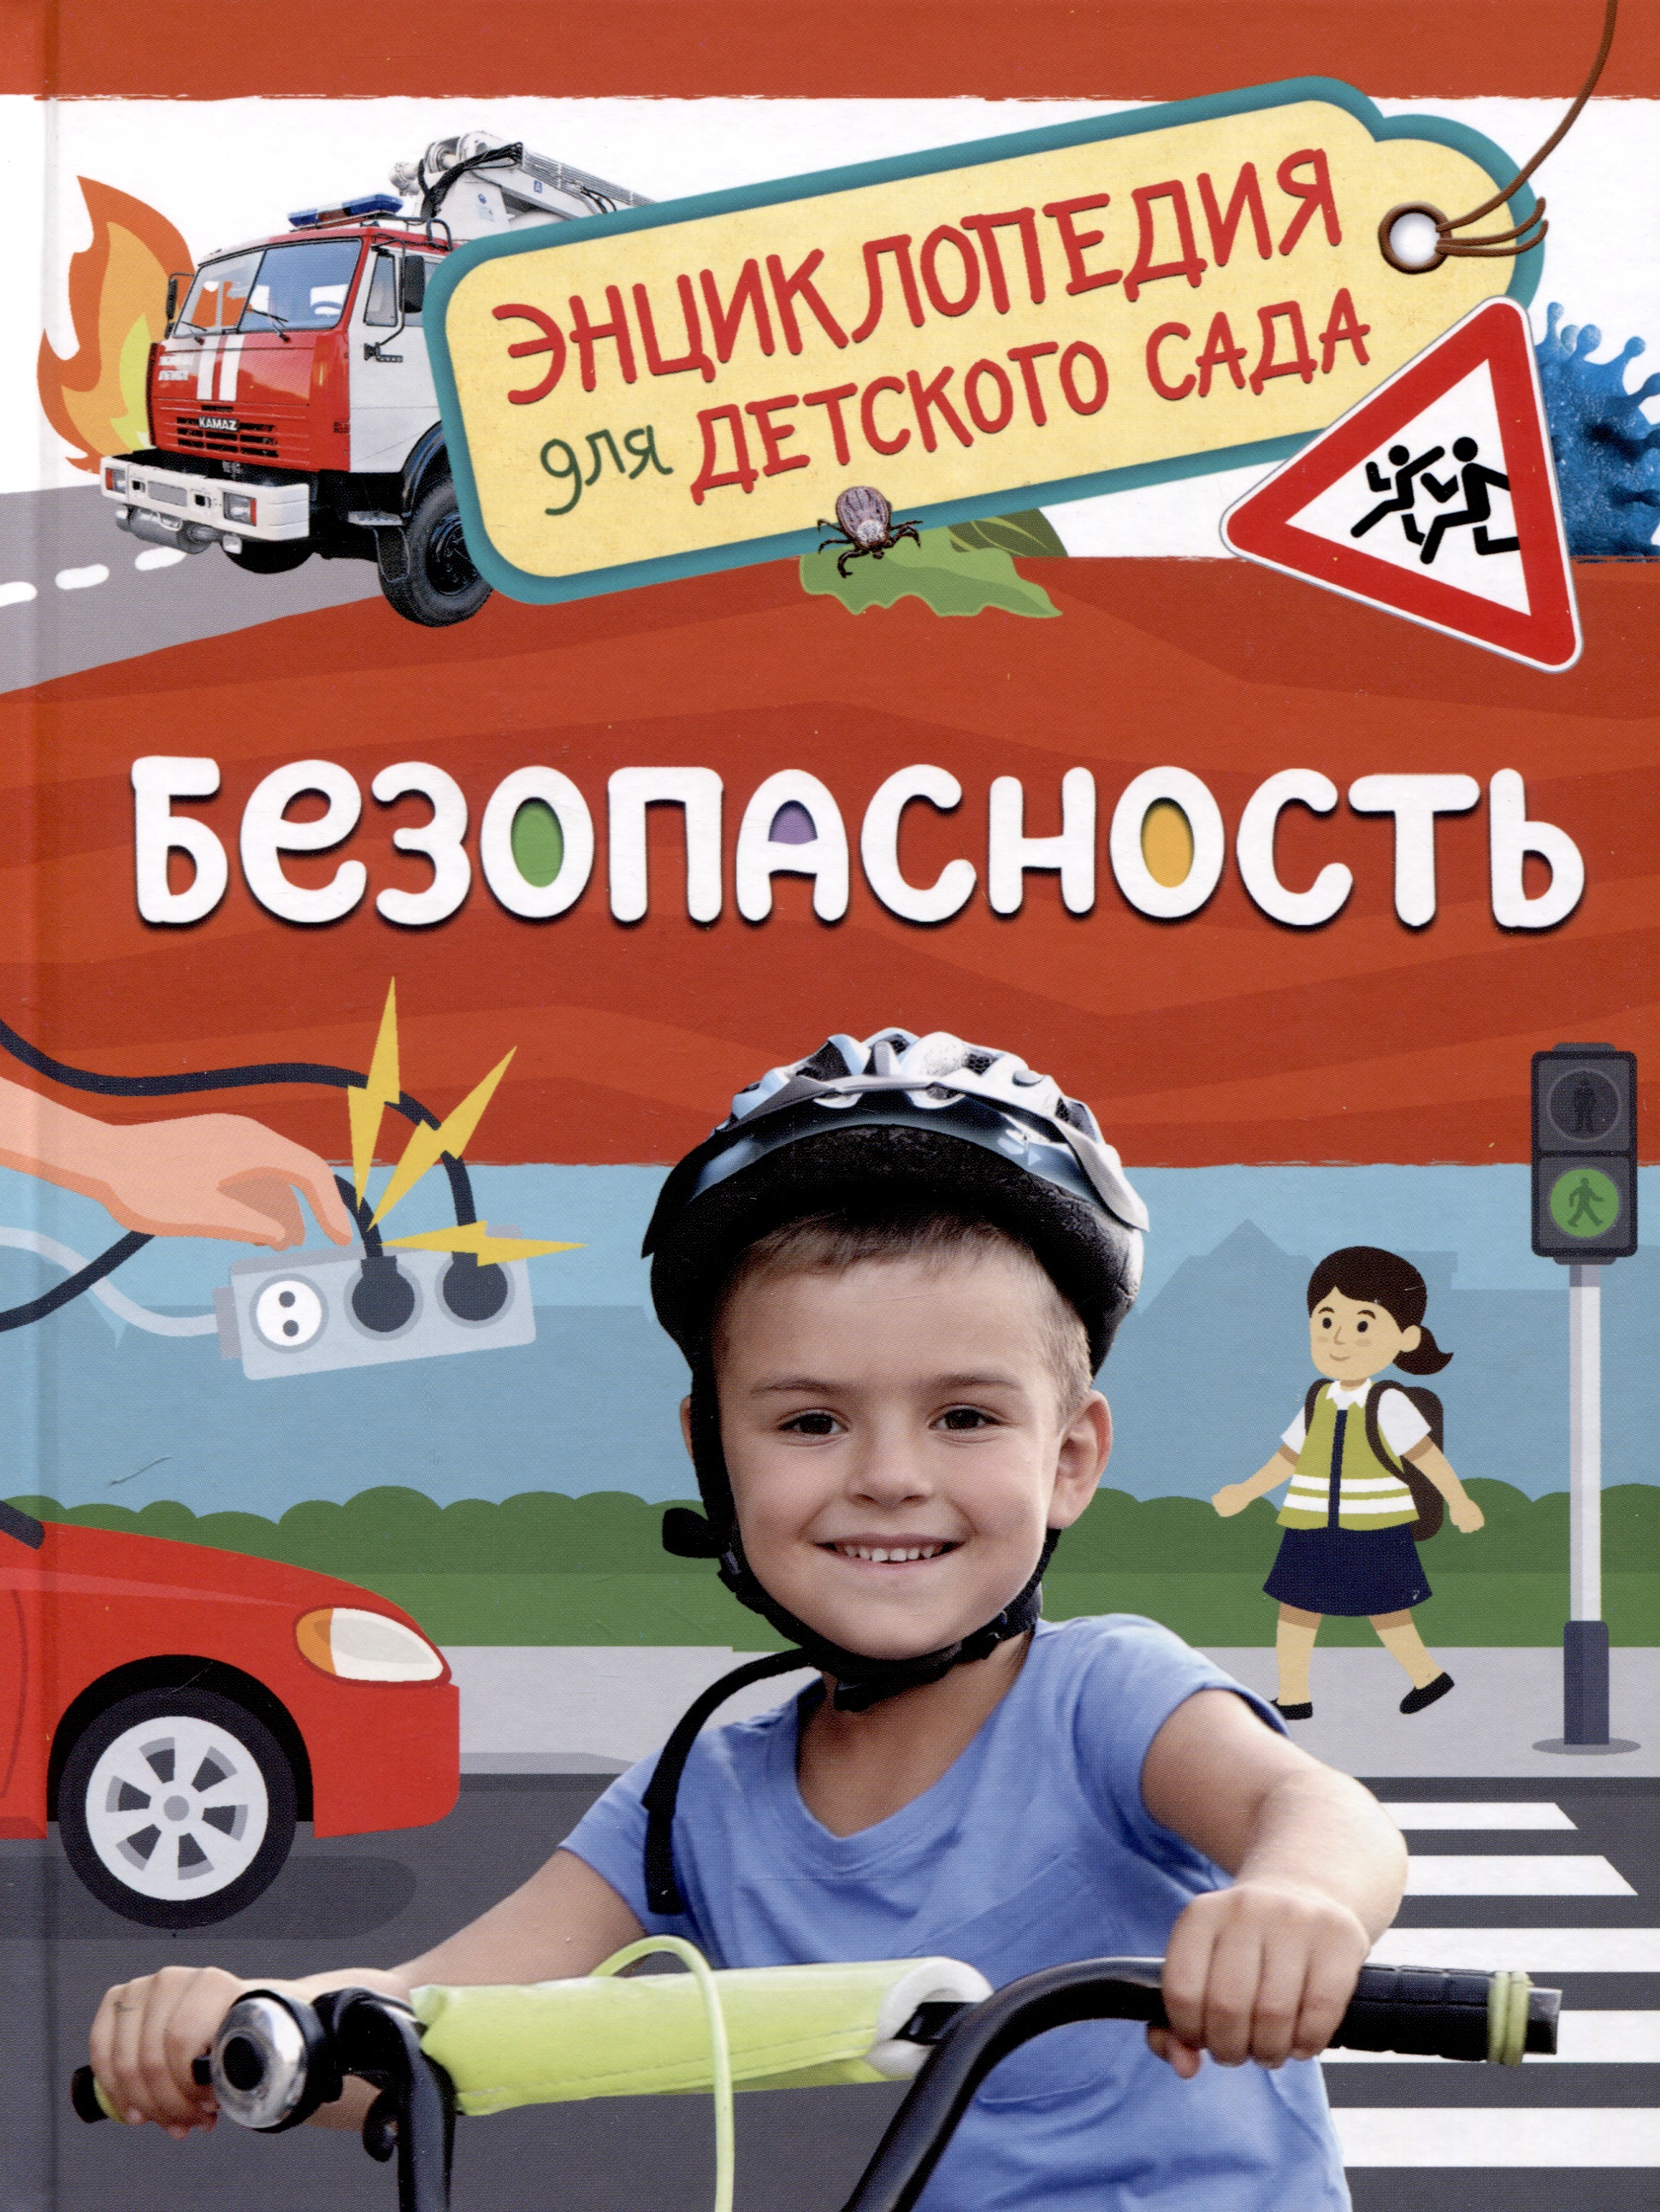 Безопасность (Энциклопедия для детского сада) энциклопедия для детского сада большие машины